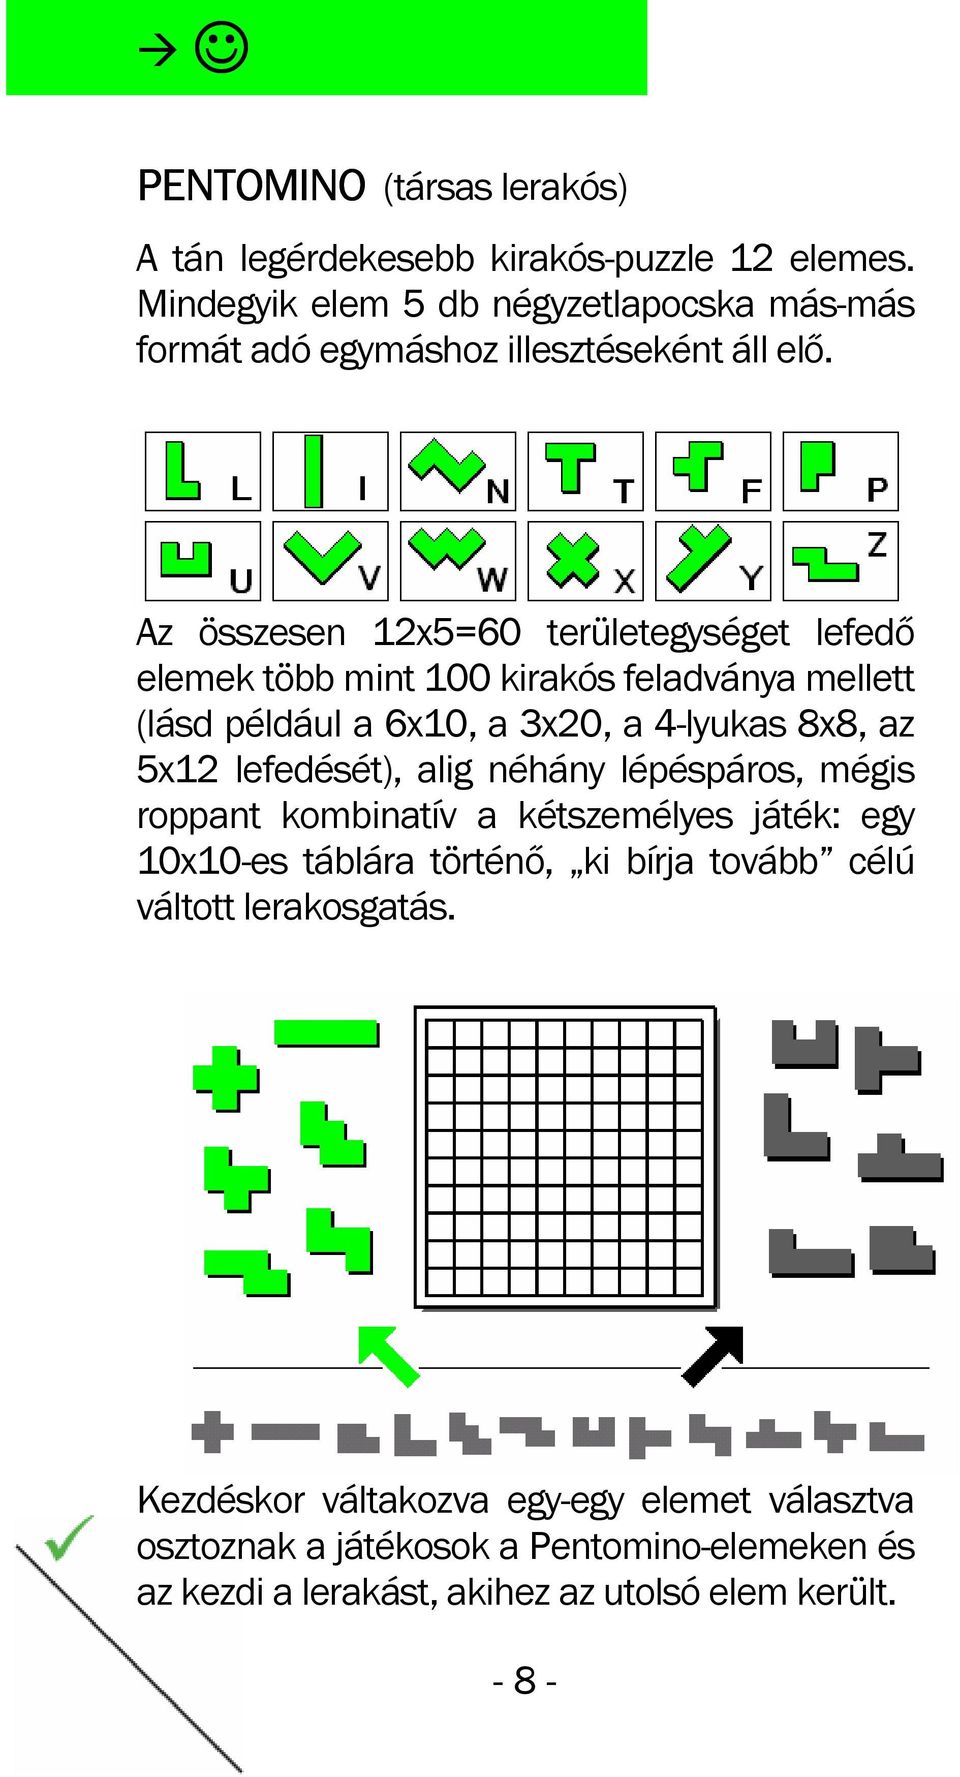 Az összesen 12x5=60 területegységet lefedő elemek több mint 100 kirakós feladványa mellett (lásd például a 6x10, a 3x20, a 4-lyukas 8x8, az 5x12